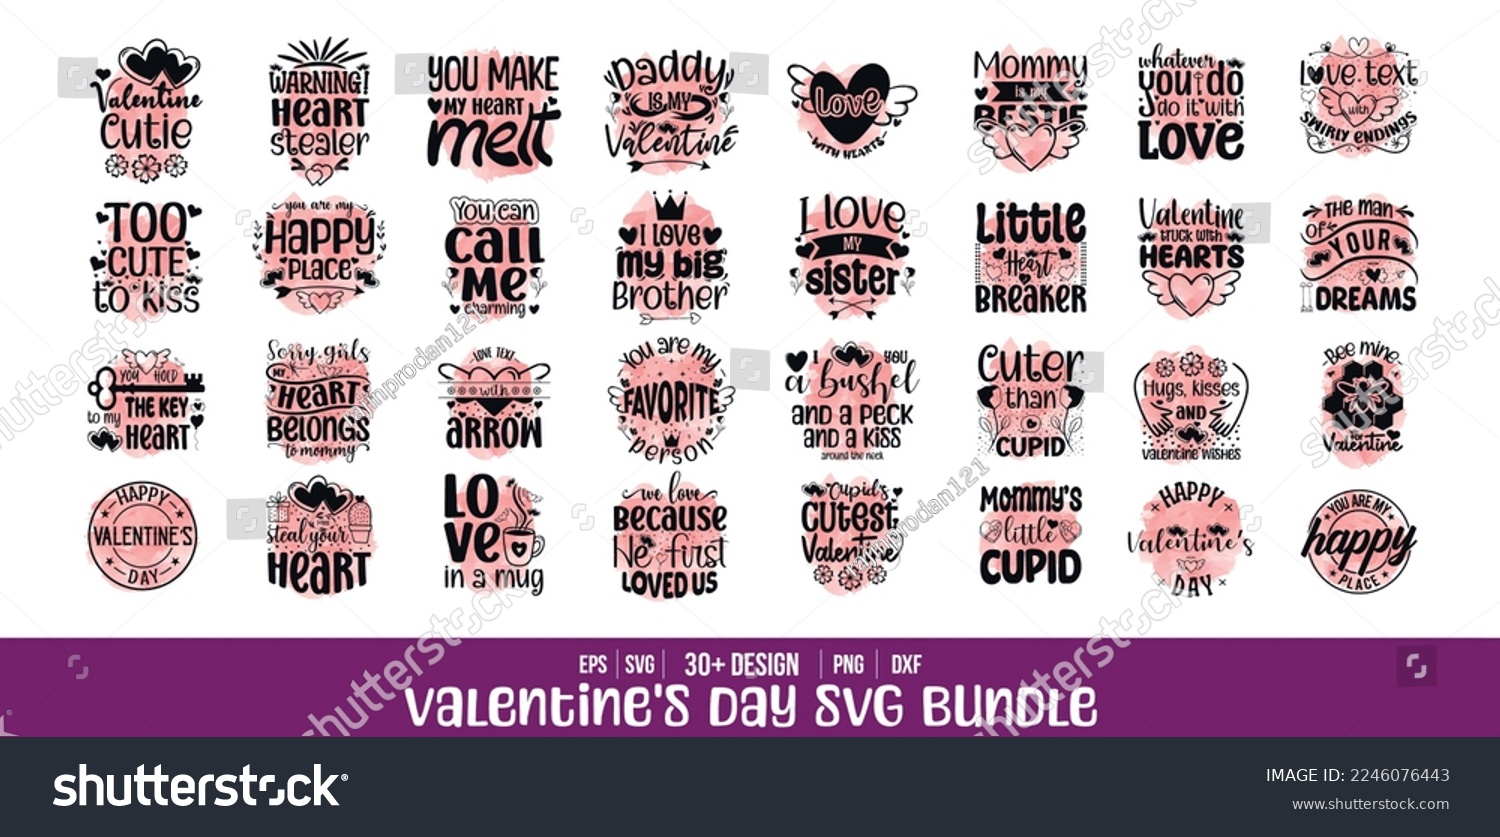 SVG of Valentine's day svg bundle, Valentines day t shirt design quotes bundle svg